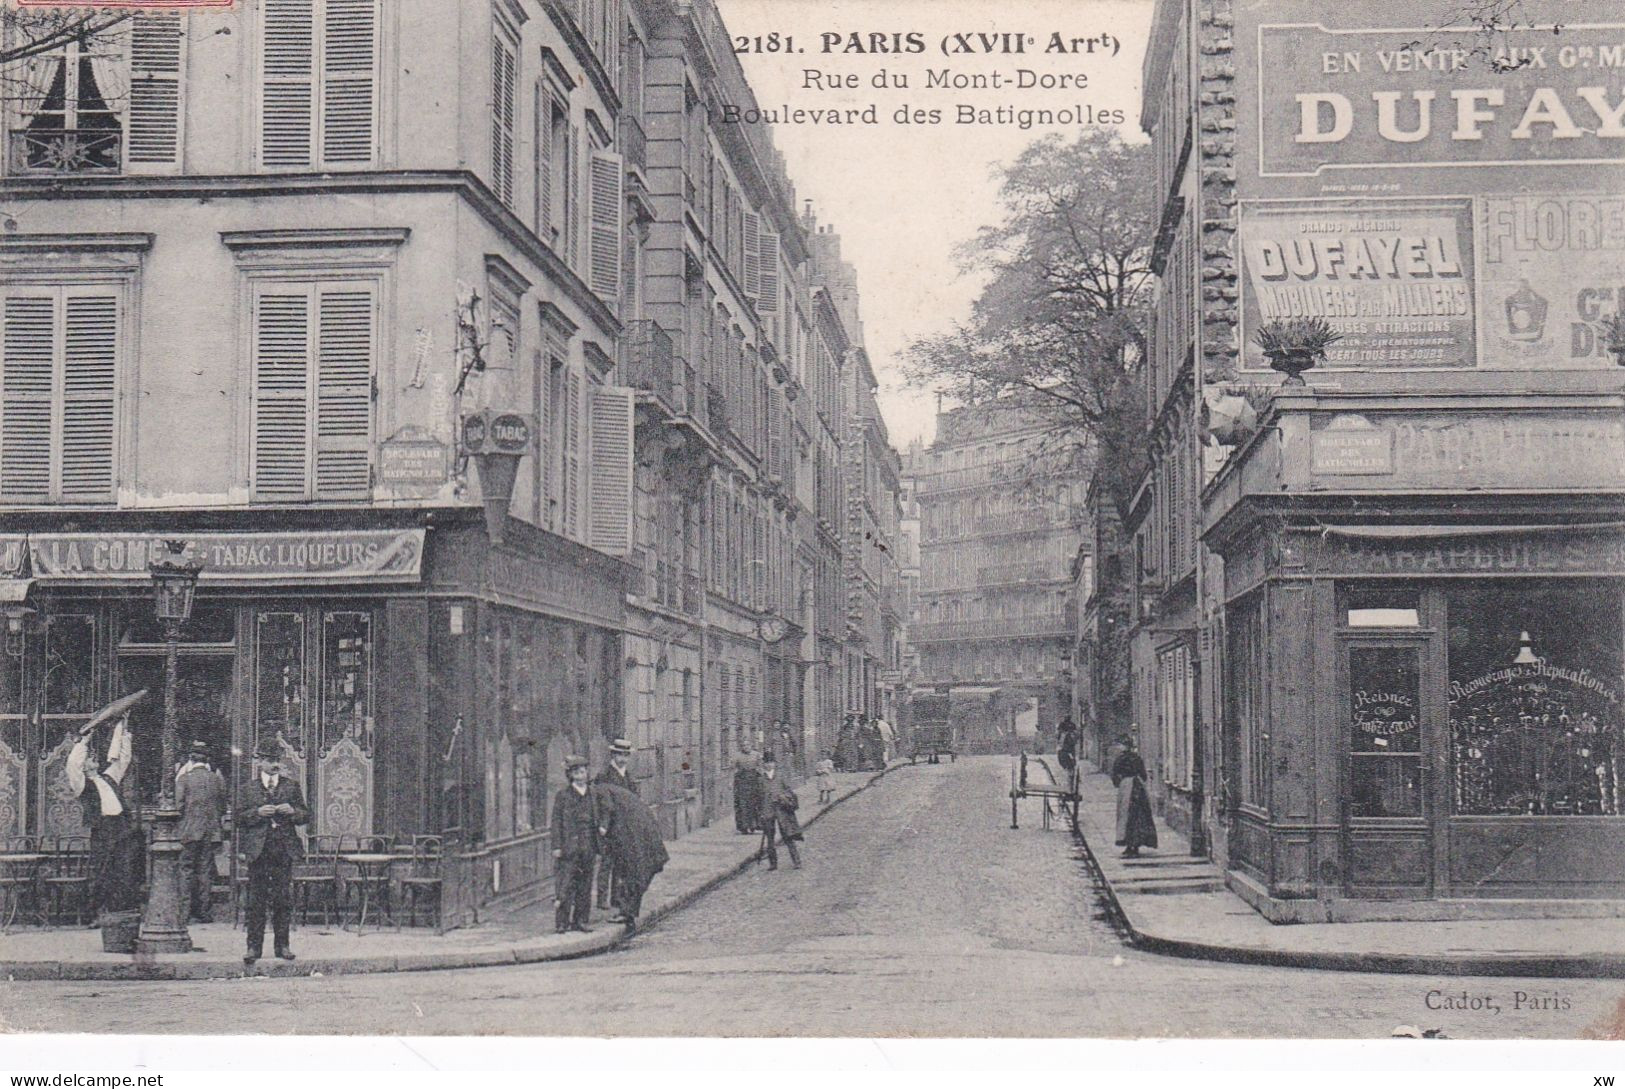 PARIS -75017- Rue Du Mont-Dore - Boulevard Des Batignolles - Animation - 19-05-24 - Paris (17)